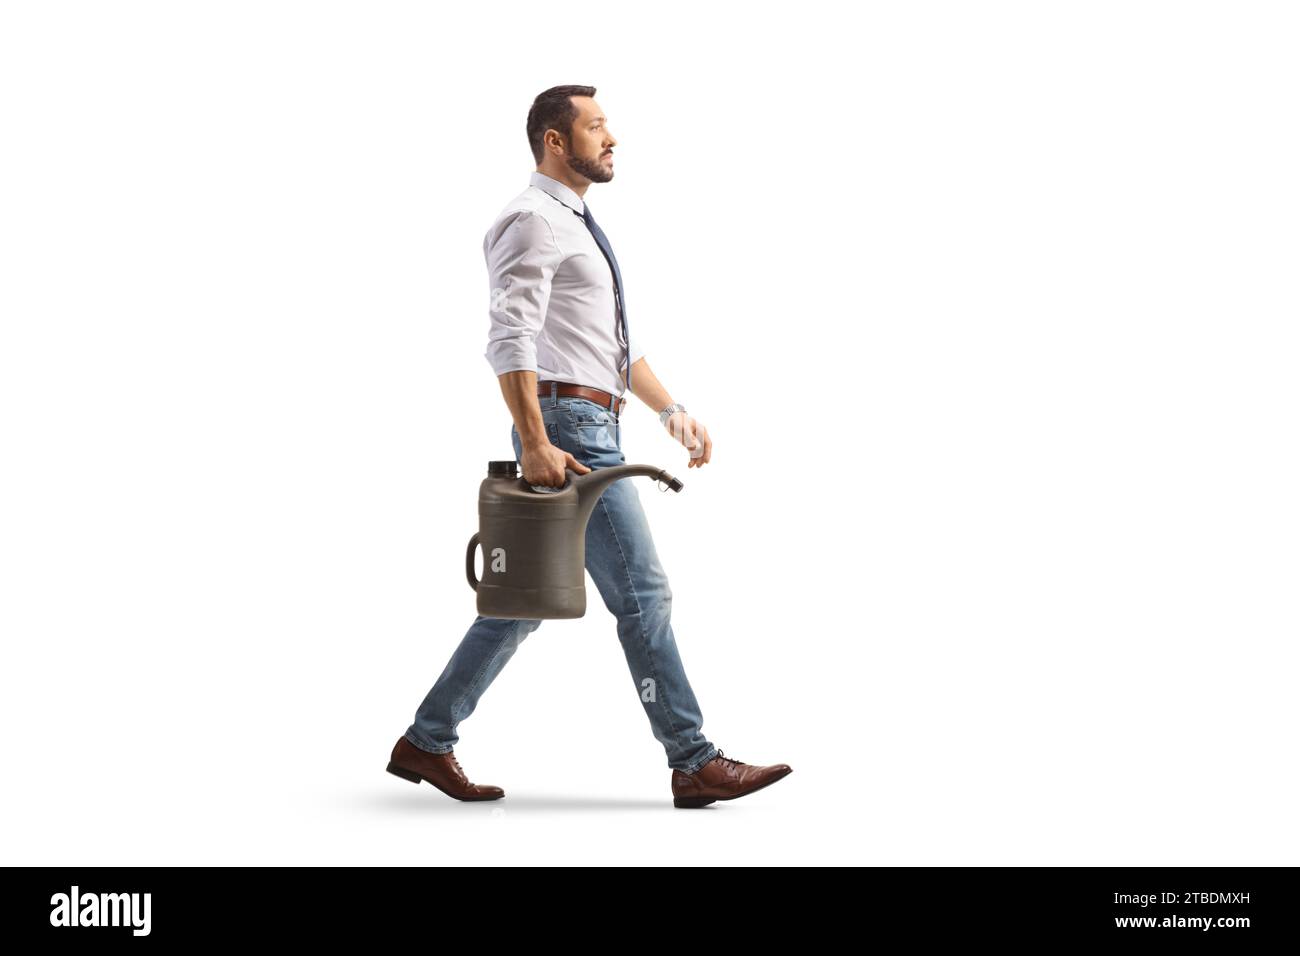 Photo de profil pleine longueur d'un homme d'affaires marchant avec un bidon d'essence isolé sur fond blanc Banque D'Images